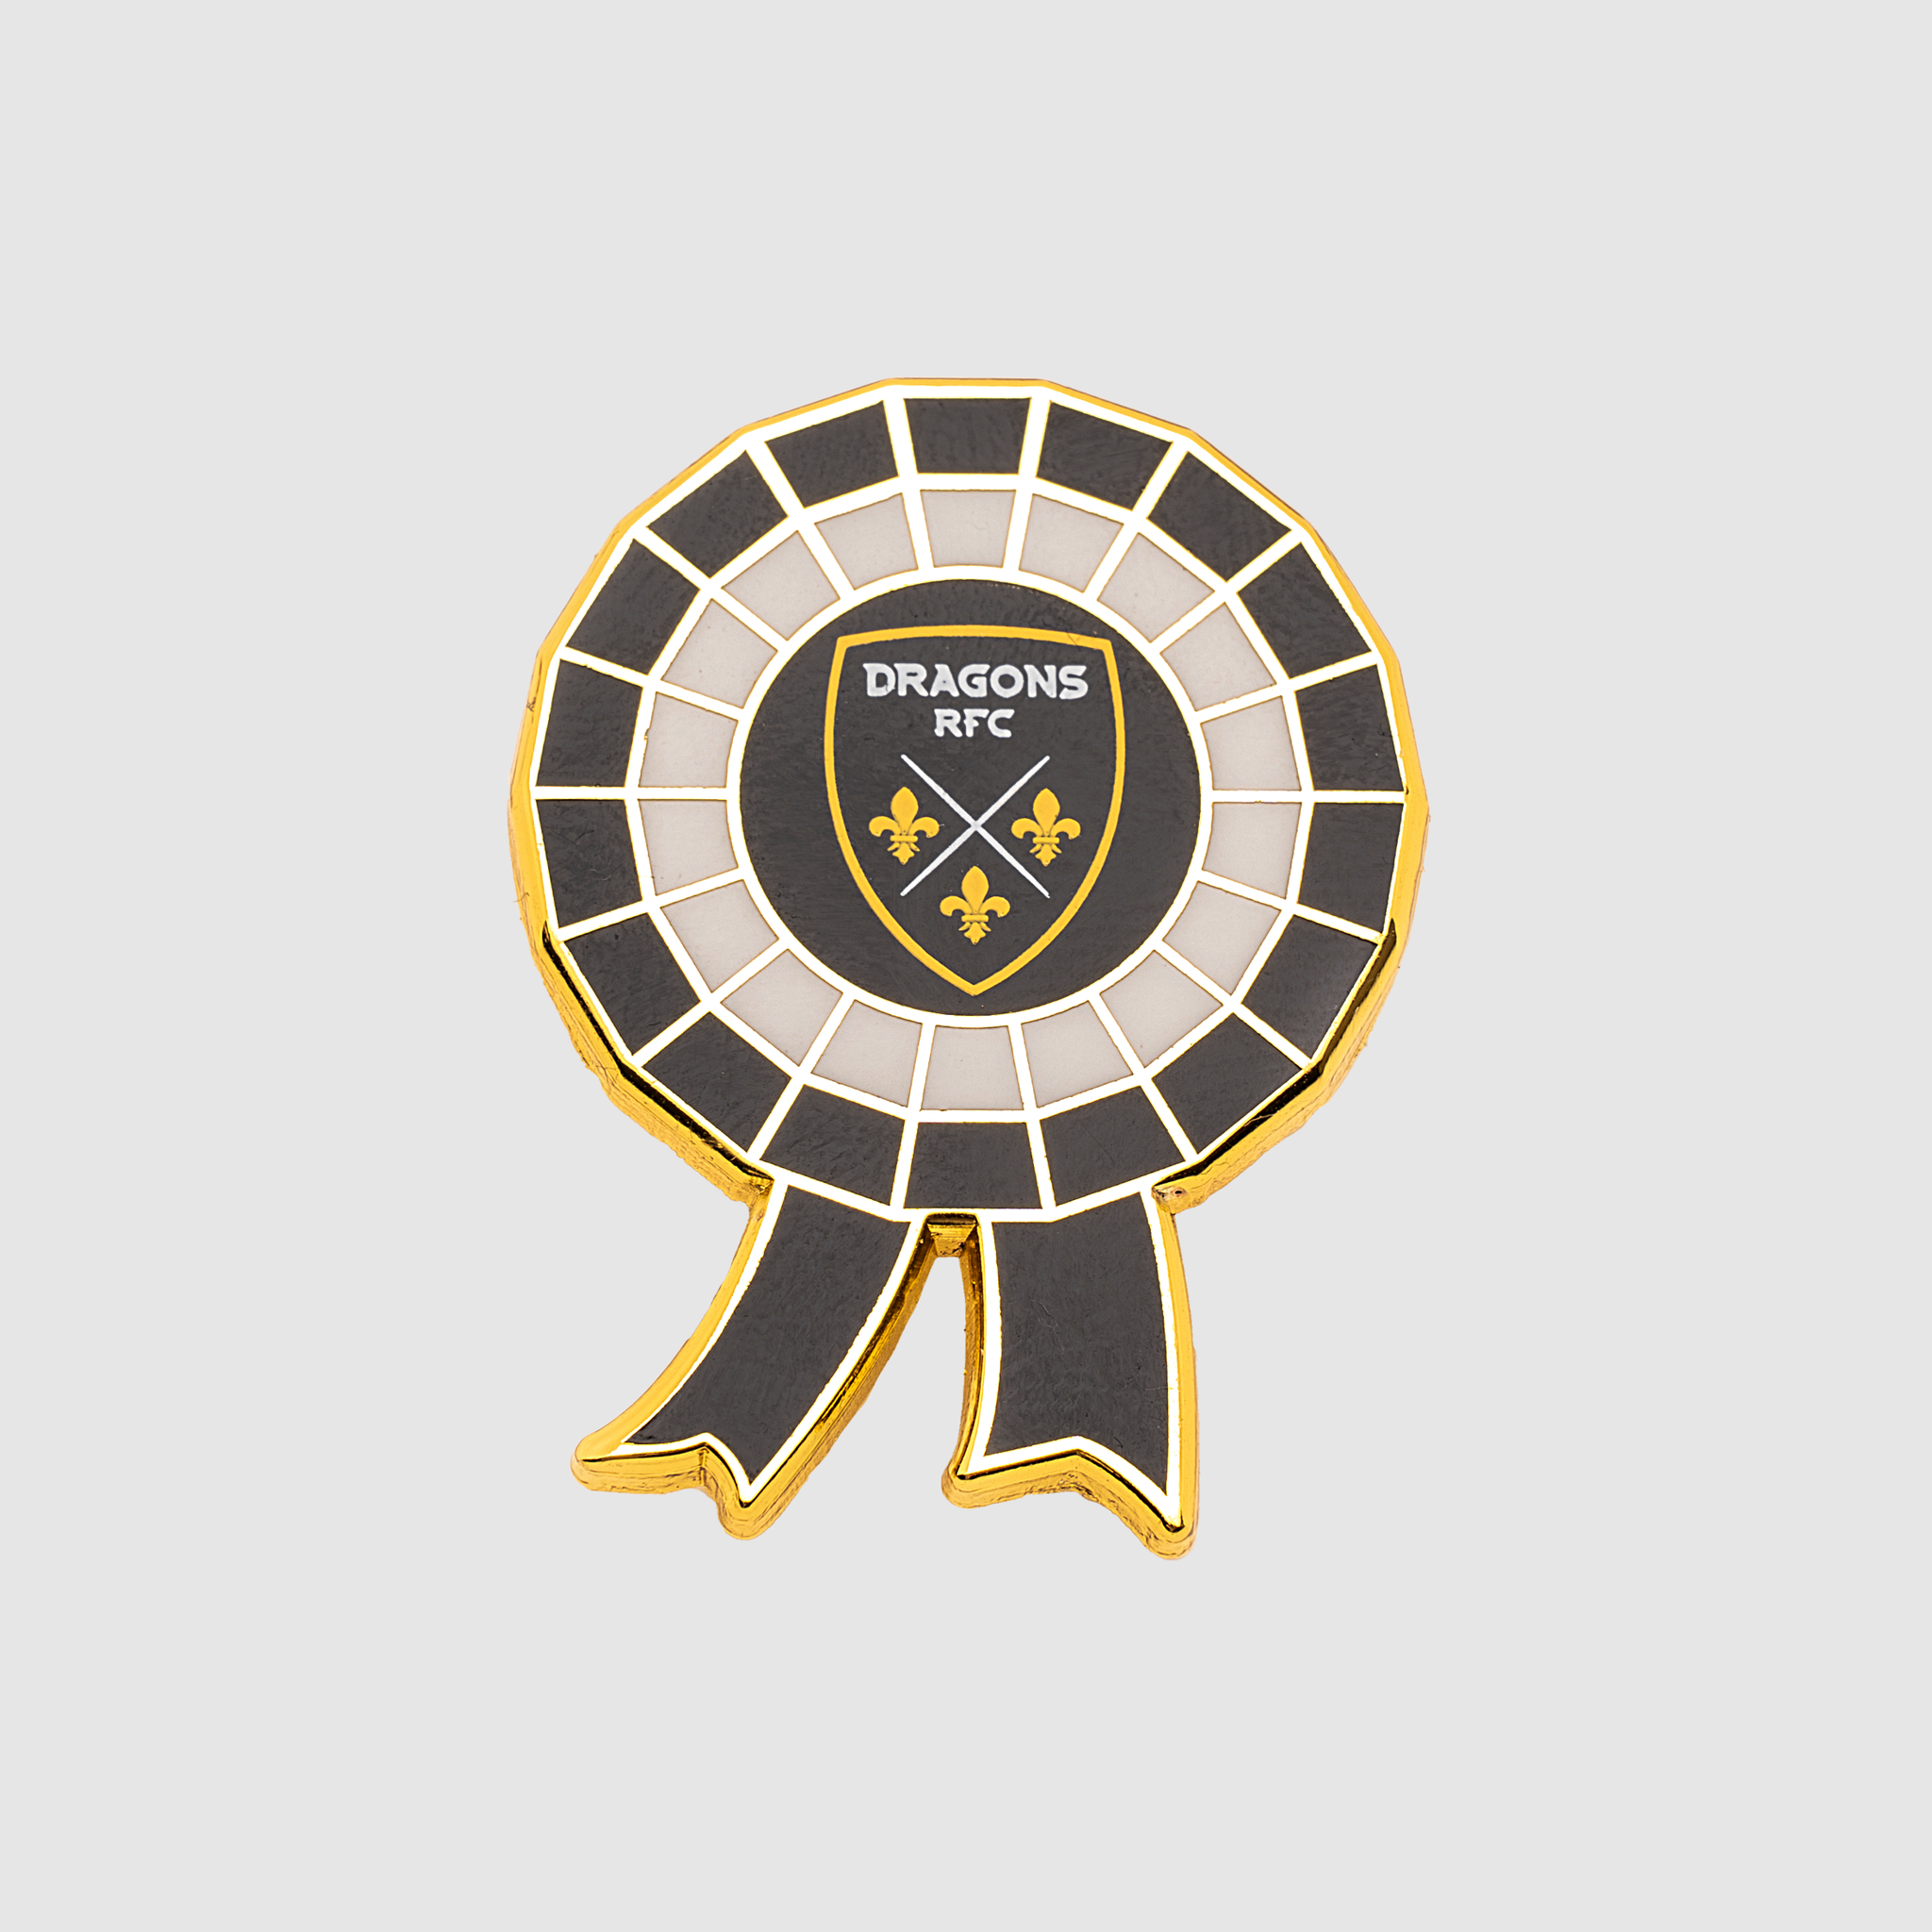 Dragons RFC Rosette Pin Badge